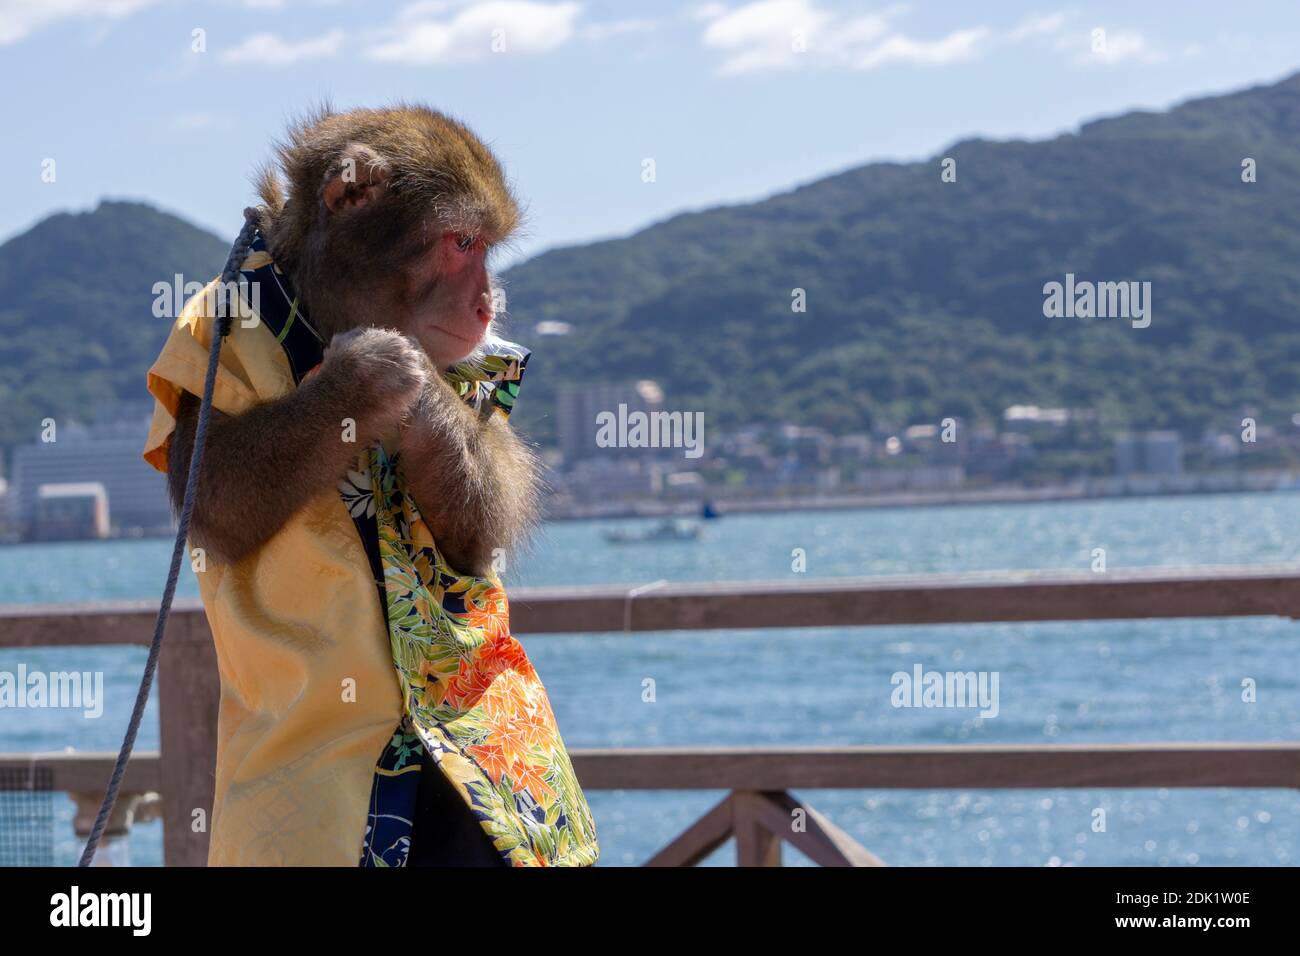 Monkey Are Thinking About Something Stock Photo